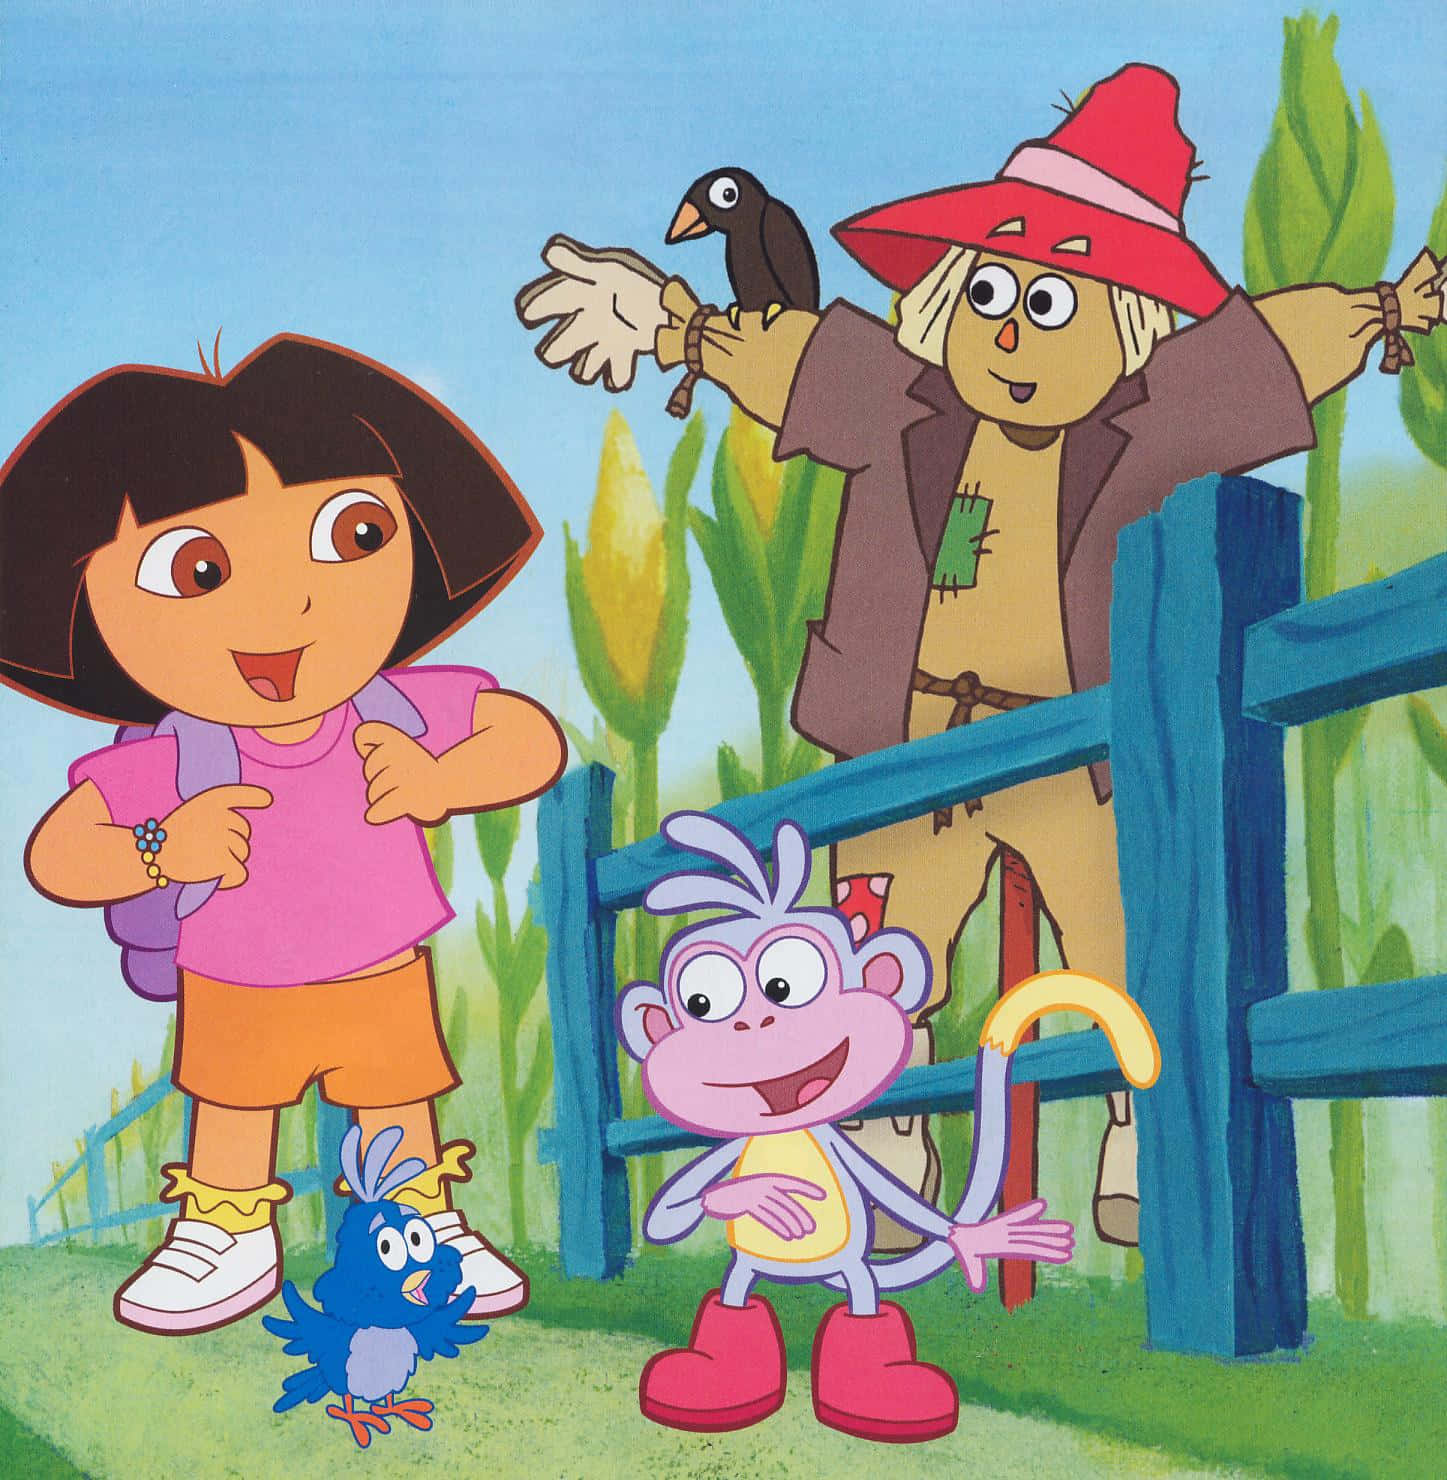 Enjoy the adventures of Dora the Explorer